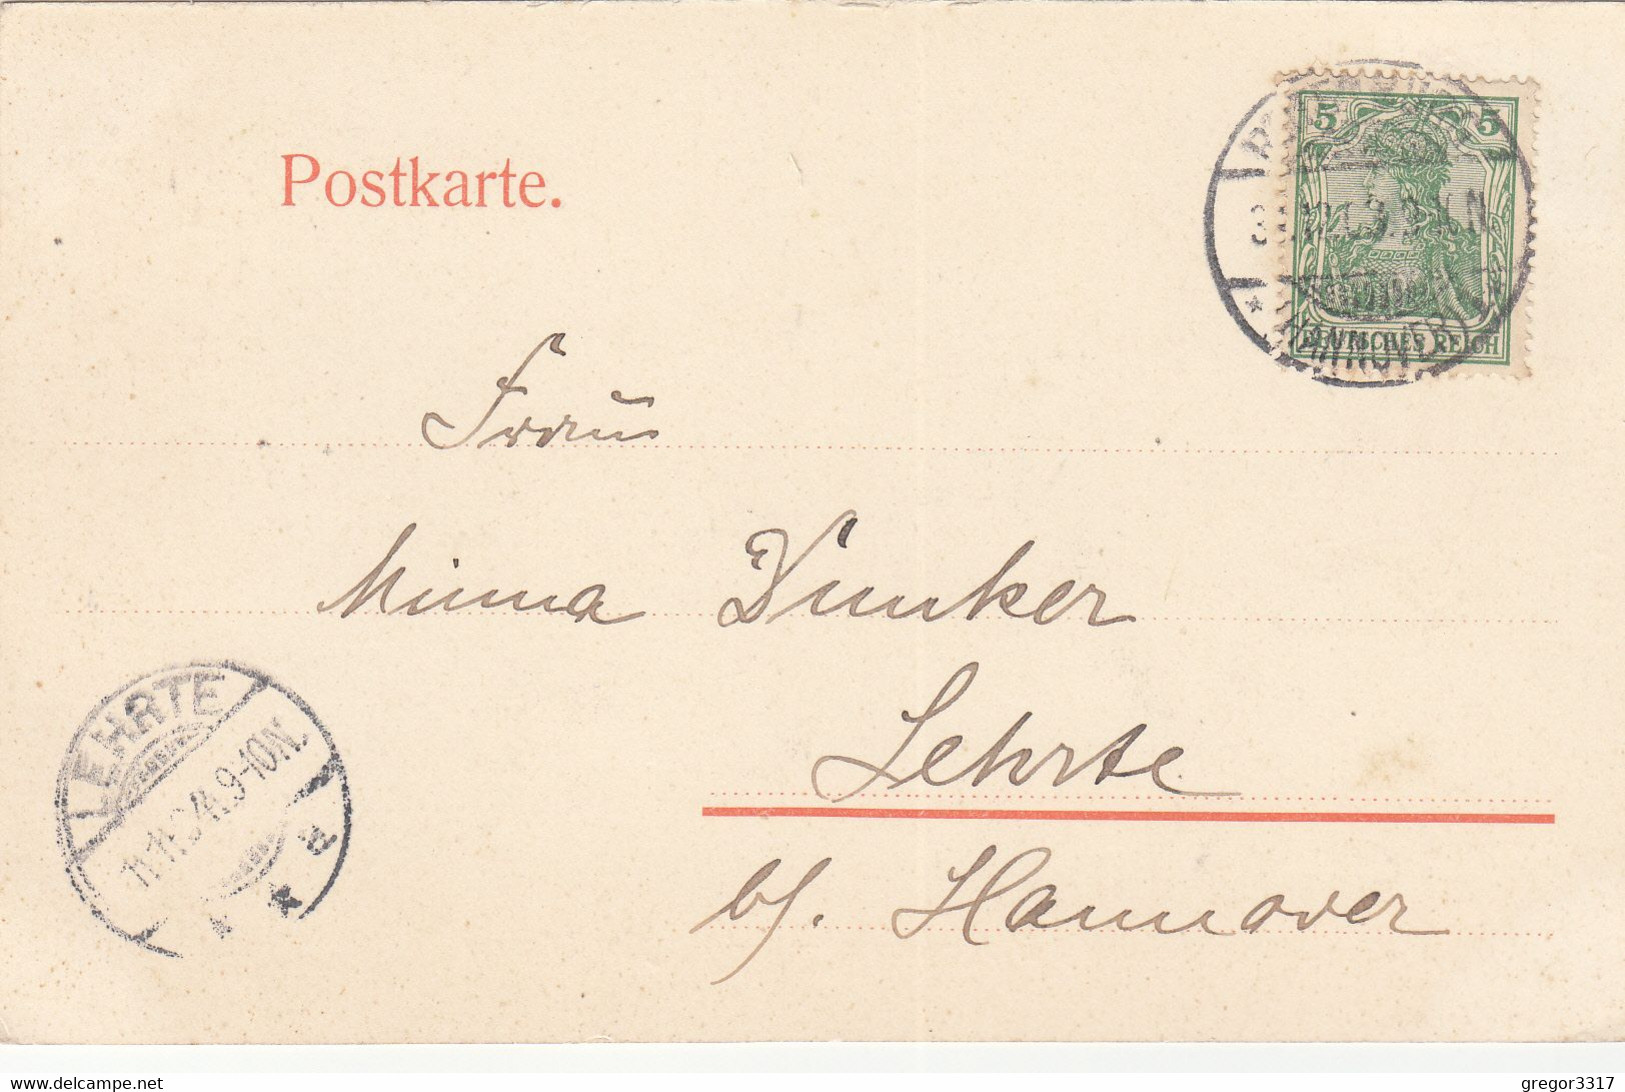 7484) GRUSS Aus ROTENBURG I. HANNOVER - Am WASSER - Aug. Temme - Rotenburg I. H. - 1903 !! - Rotenburg (Wuemme)